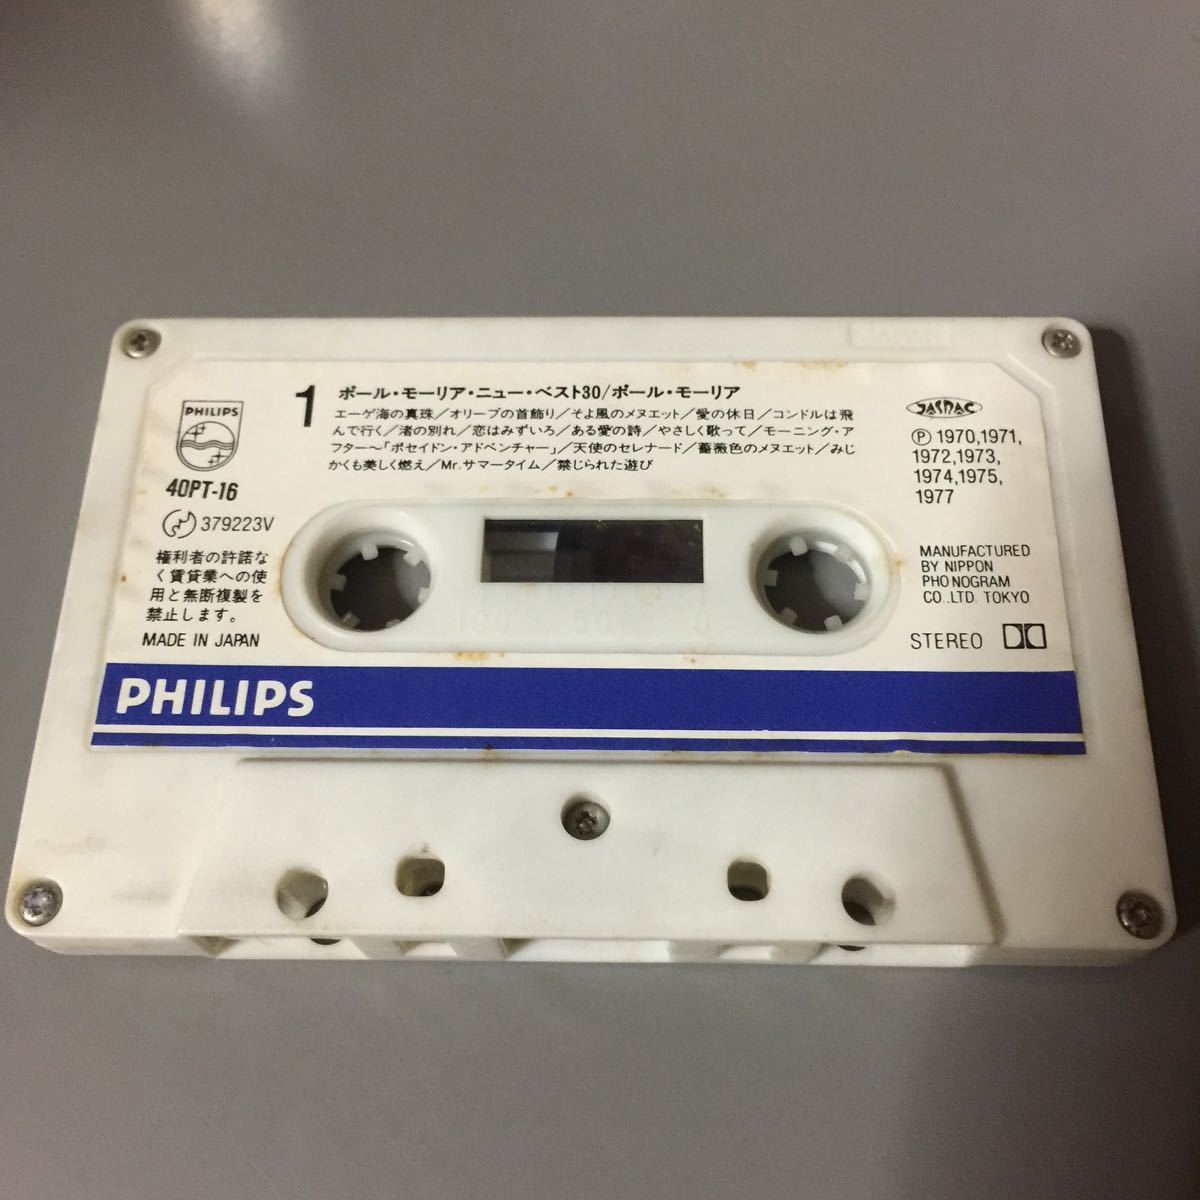  Пол   *  ... задний   серый   тест  *  ... 30  японское издание  кассета  лента  【... отсутствие  】